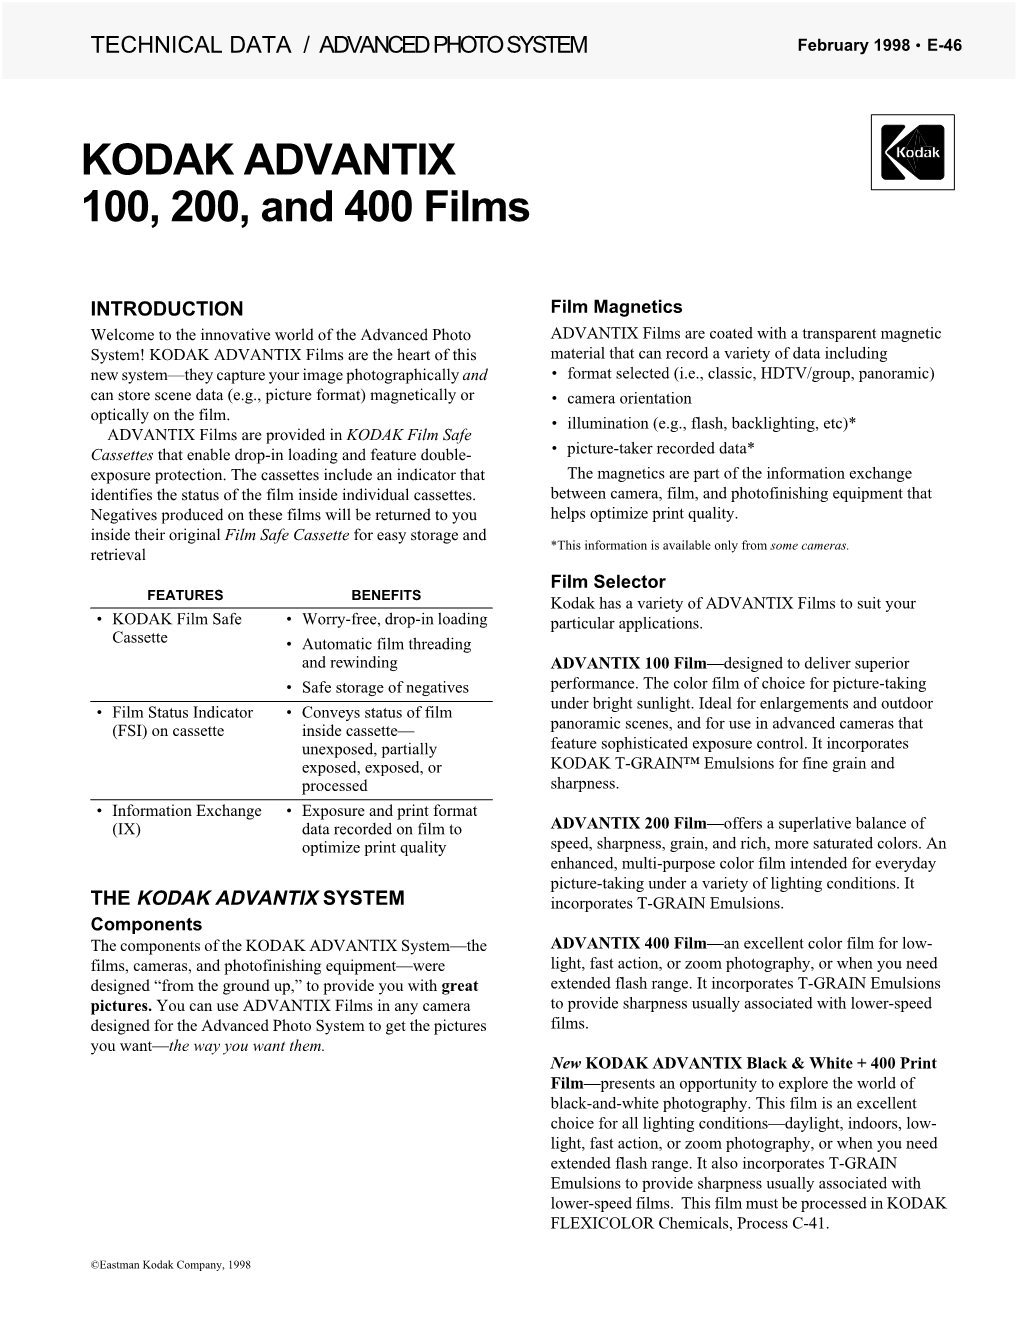 KODAK ADVANTIX 100, 200, and 400 Films